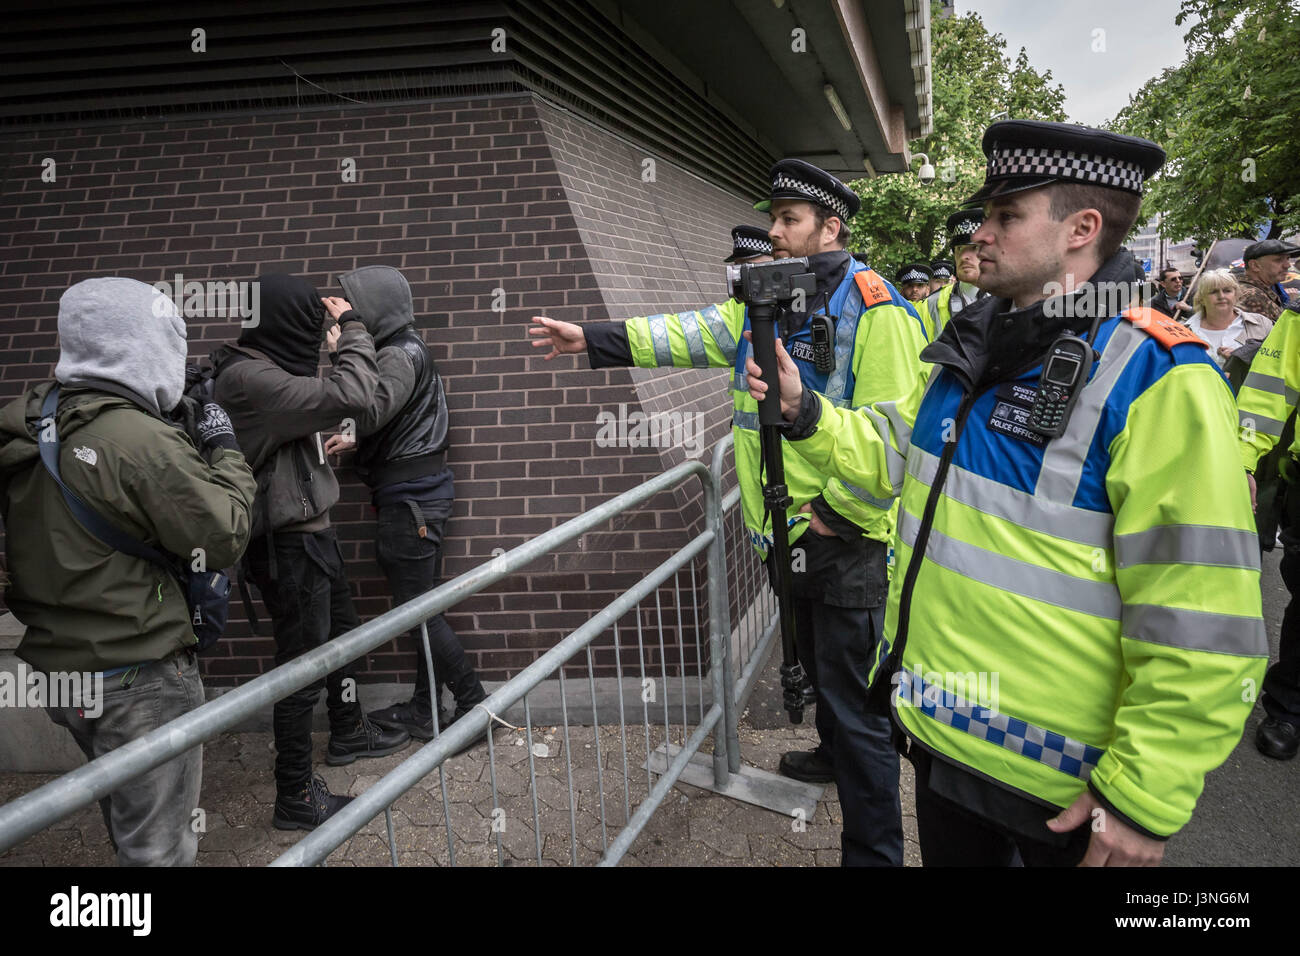 Londra, Regno Unito. Il 6 maggio, 2017. Anti-fascisti contro-protestare contro l'estrema destra movimento a sud-est di alleanza anti-immigrazione protestare fuori casa lunare, la sede del Regno Unito di visti e di immigrazione. © Guy Corbishley/Alamy Live News Foto Stock